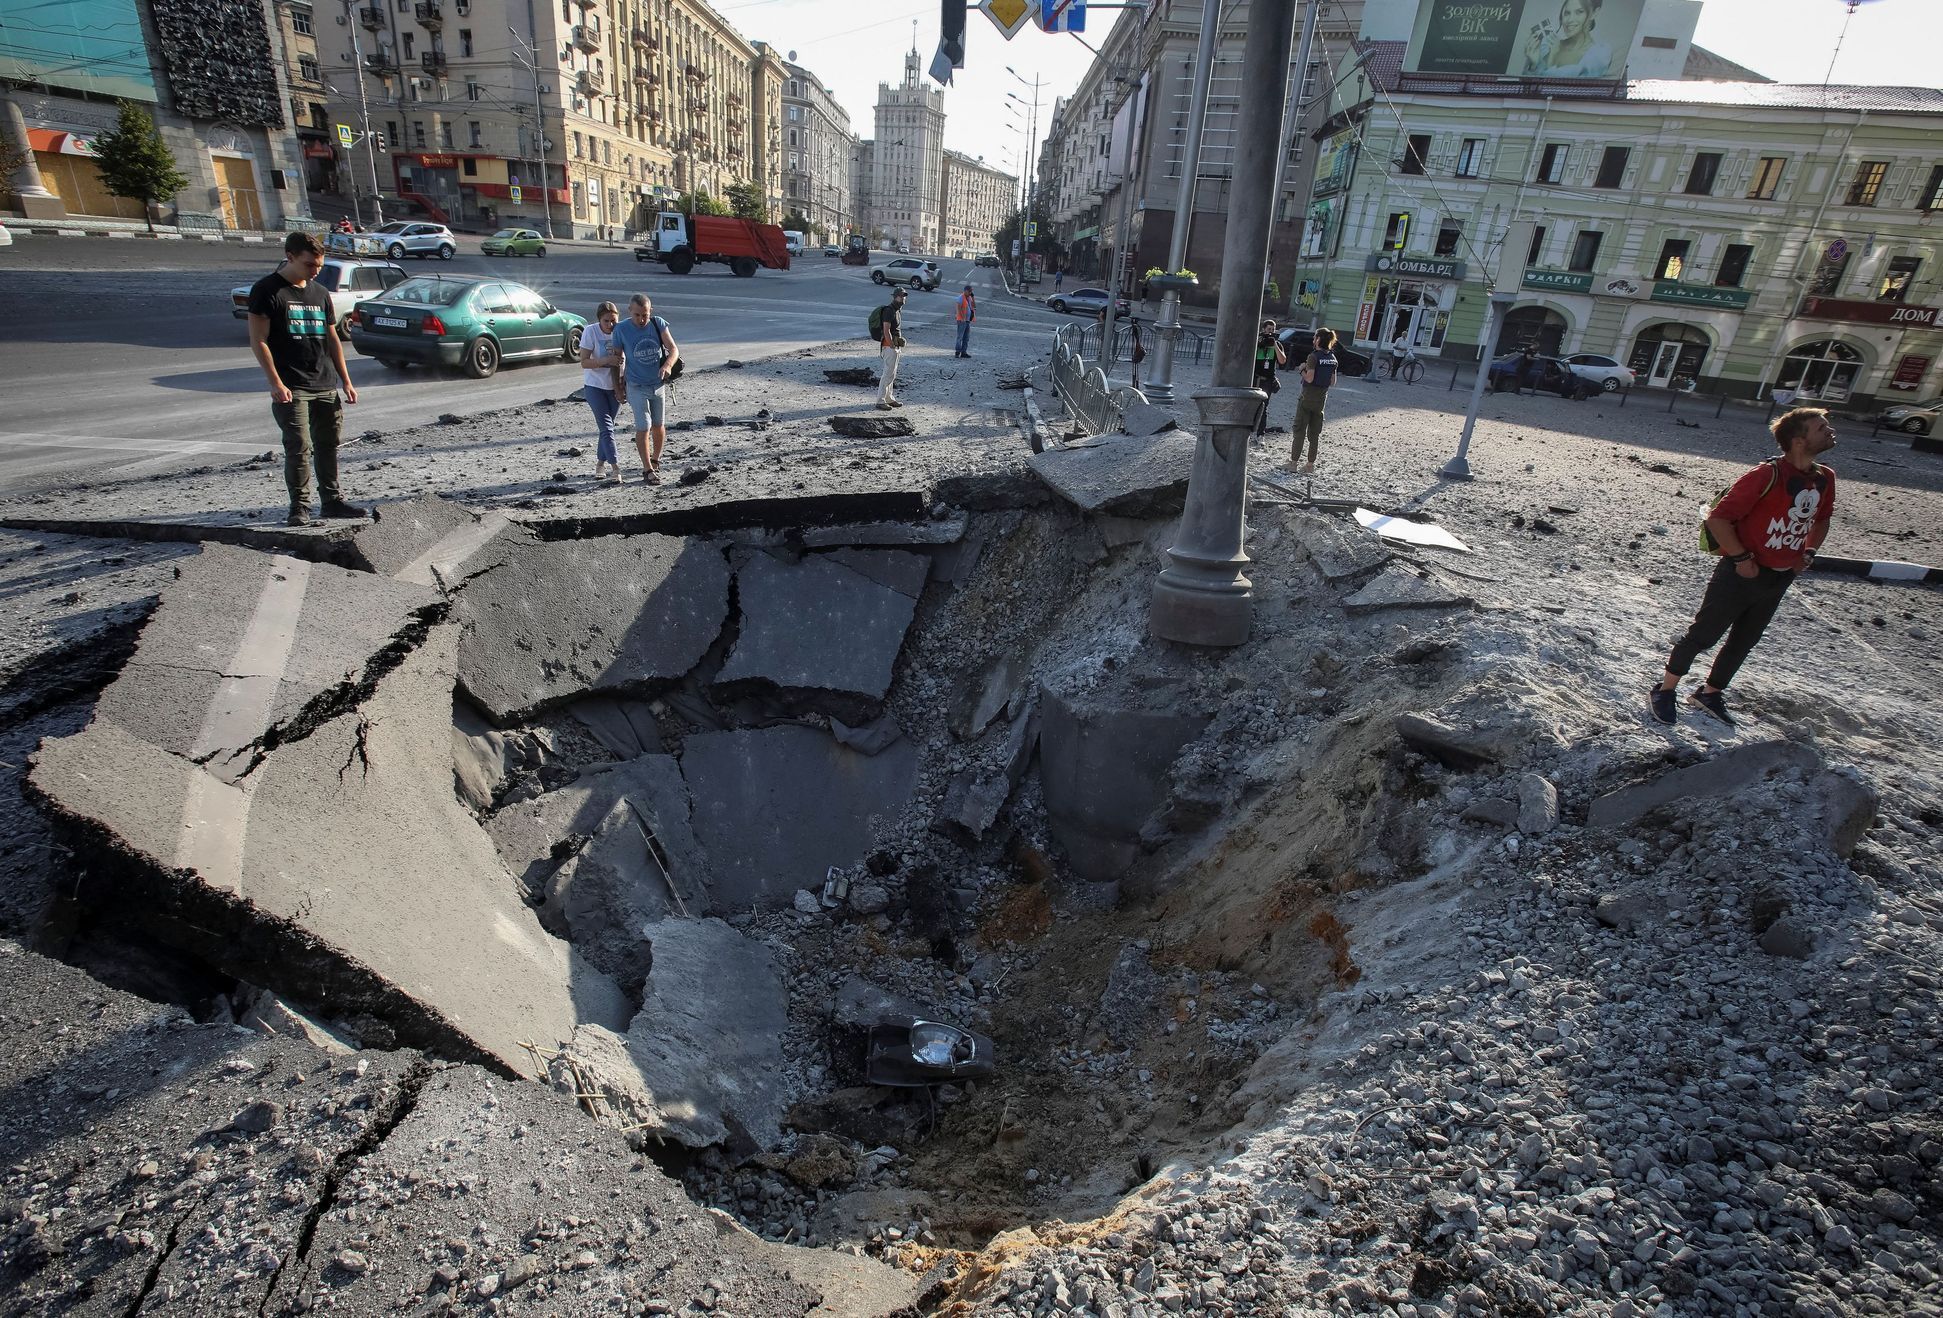 V centru ukrajinského Charkova zůstal takový kráter po nočním ruském vojenském úderu.